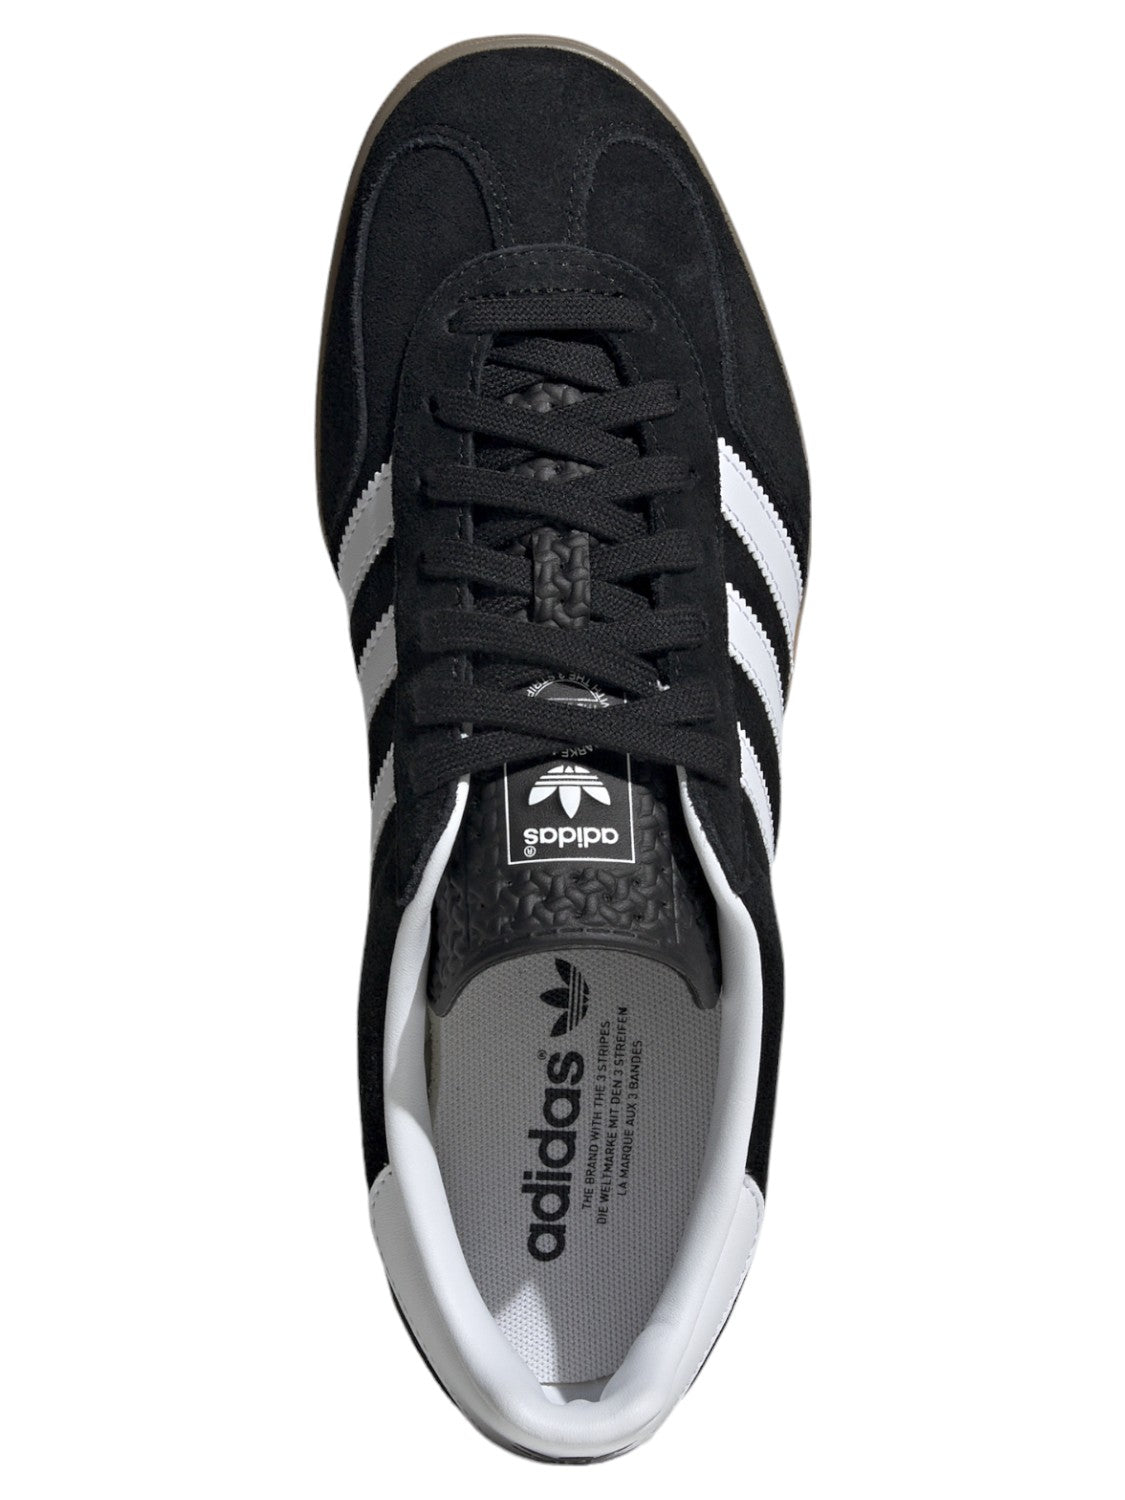 Scarpe Gazelle Indoor-Adidas Originals-Sneakers-Vittorio Citro Boutique